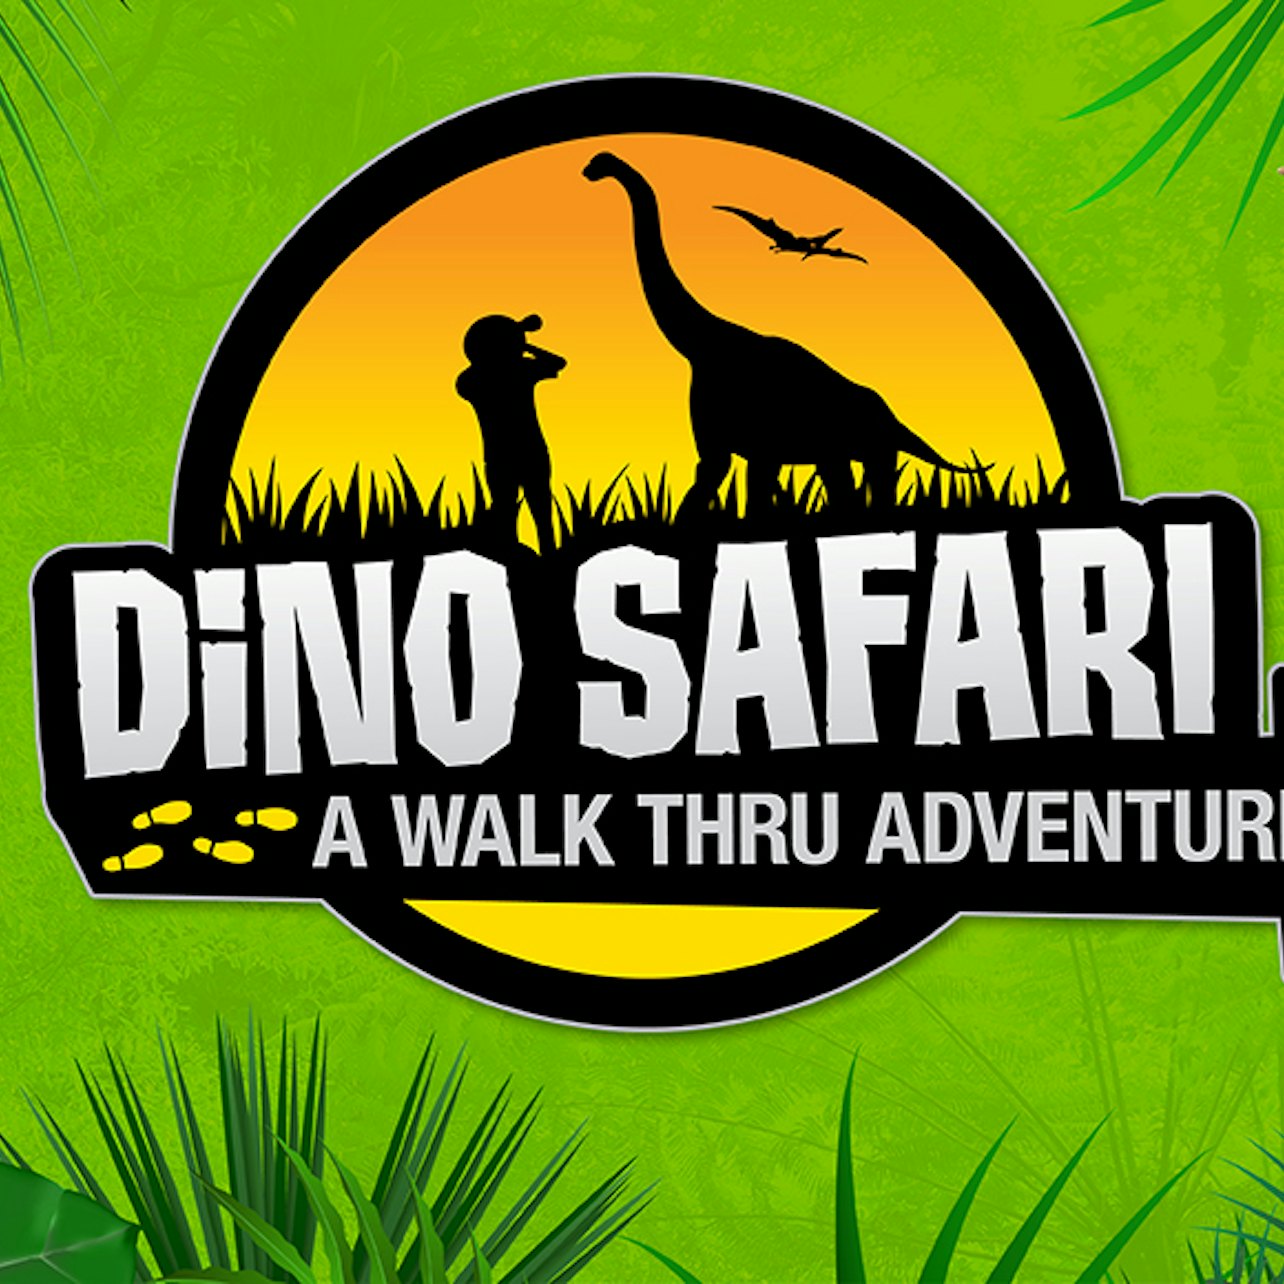 Dino Safari: A Walk Thru Adventure Boston - Accommodations in Boston